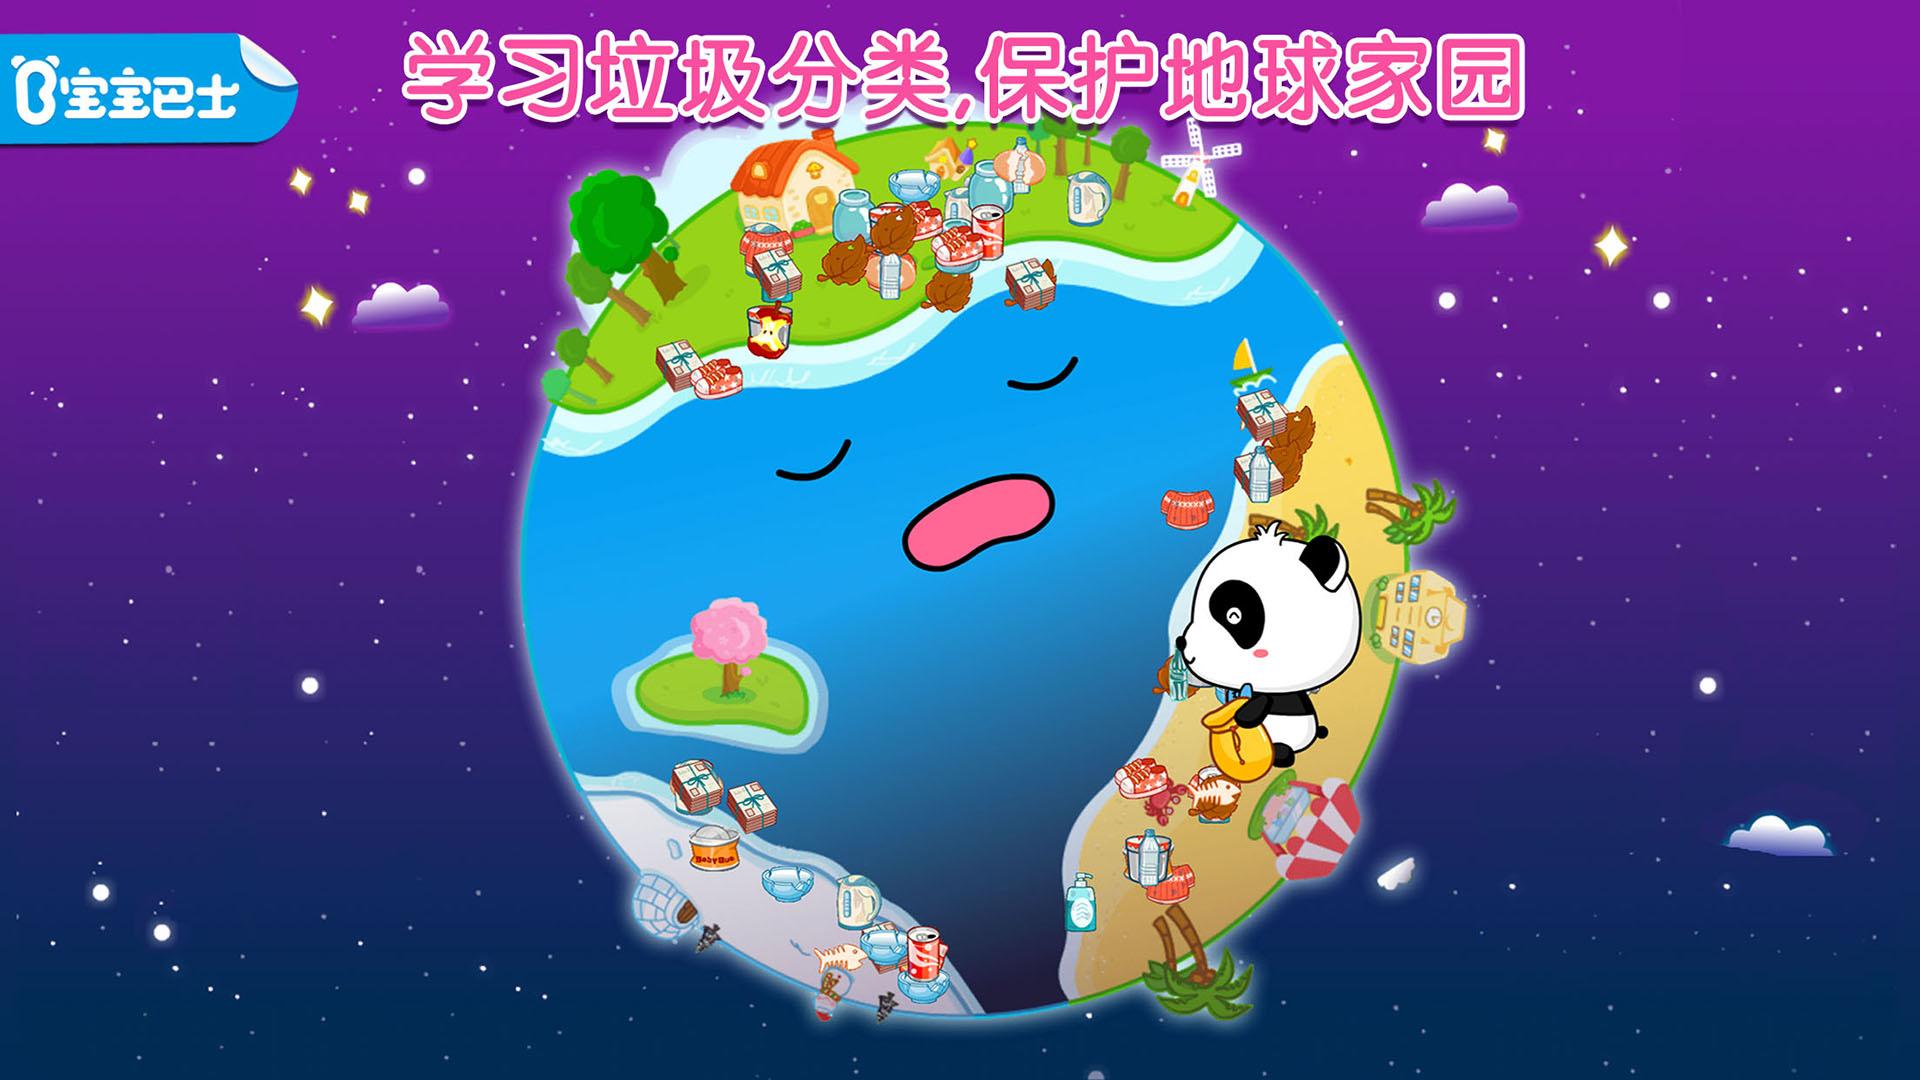 Android application Waste Sorting - Panda Games screenshort